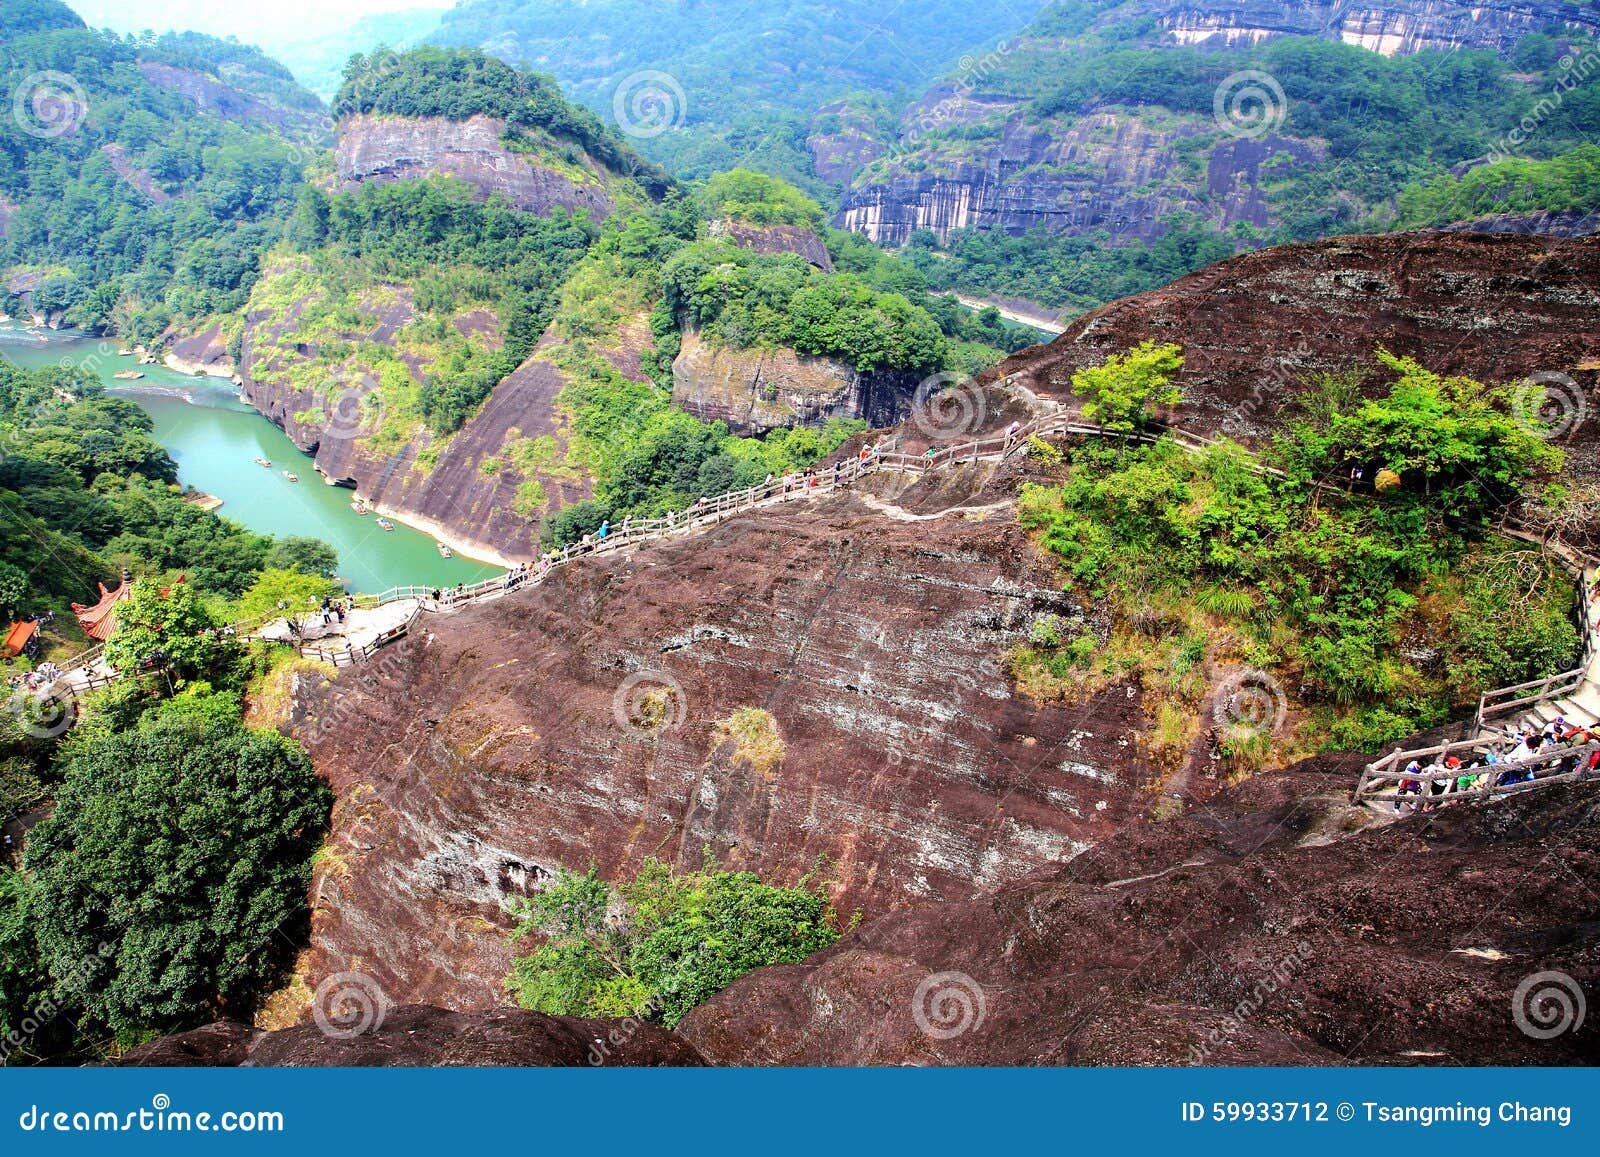 wuyi mountain , the danxia geomorphology scenery in china